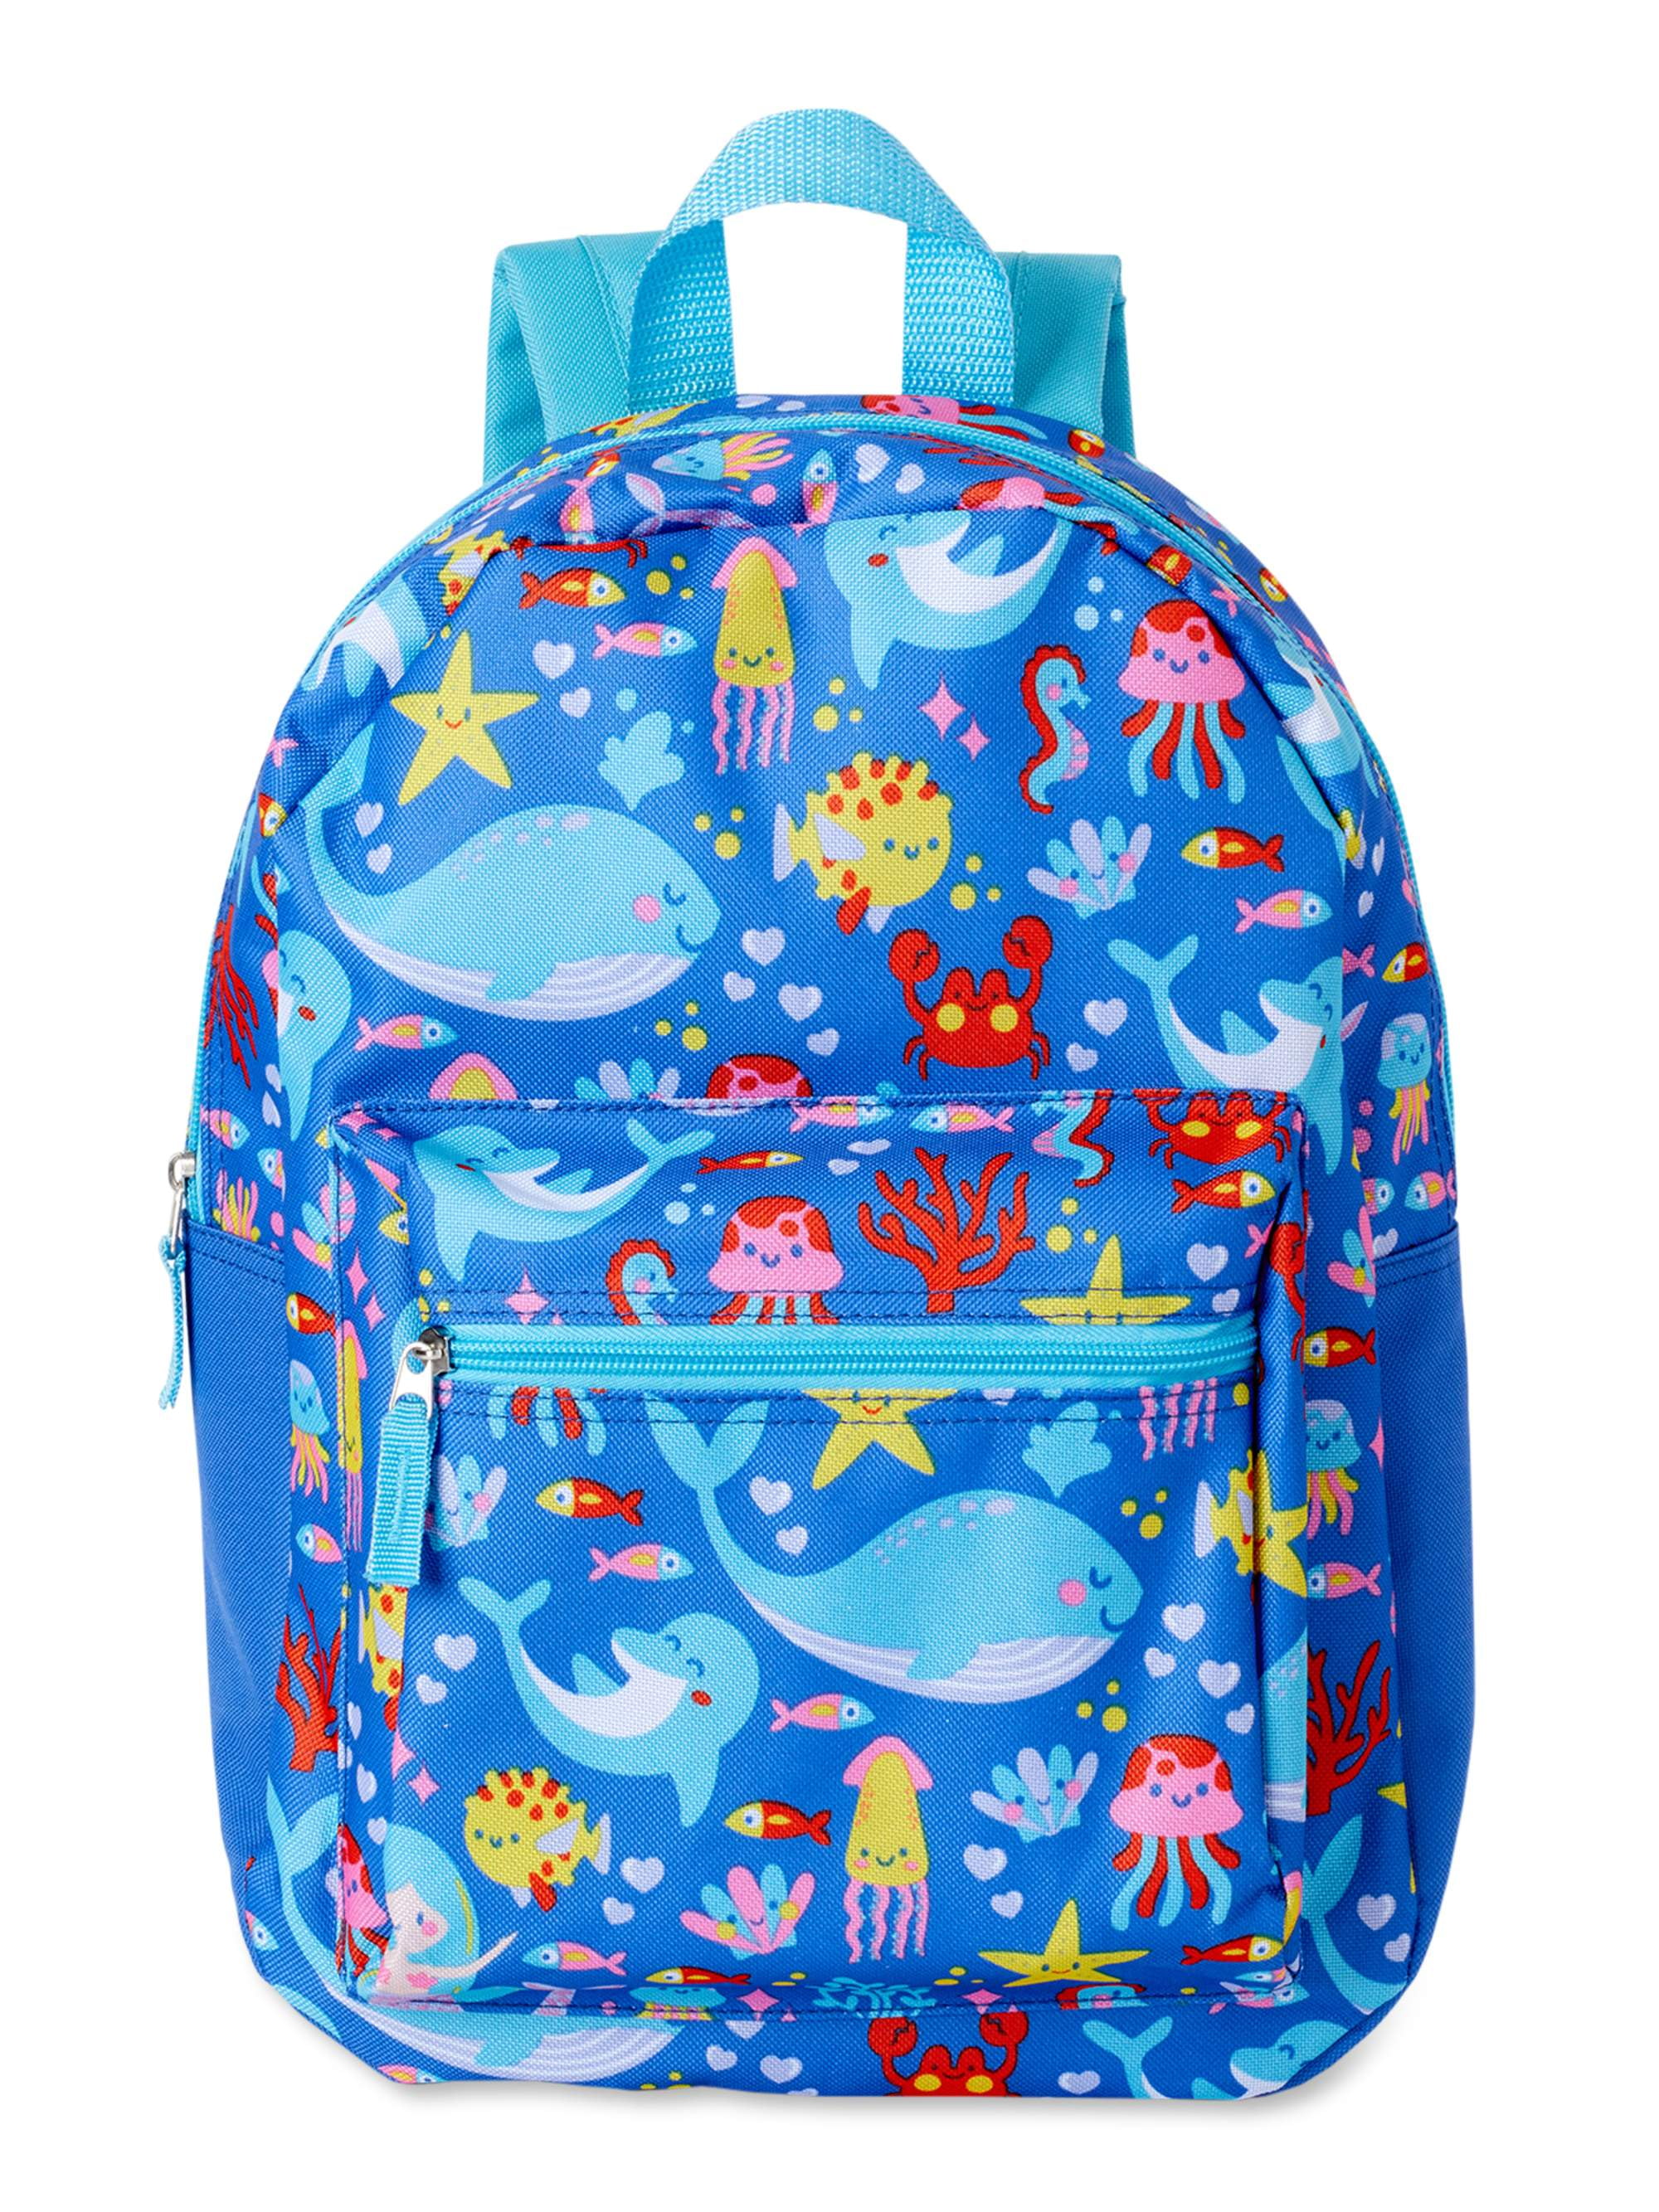 Disney Enchanted Tiki Room Backpack 17 inch Blue Shoulder Strap Adjustable 